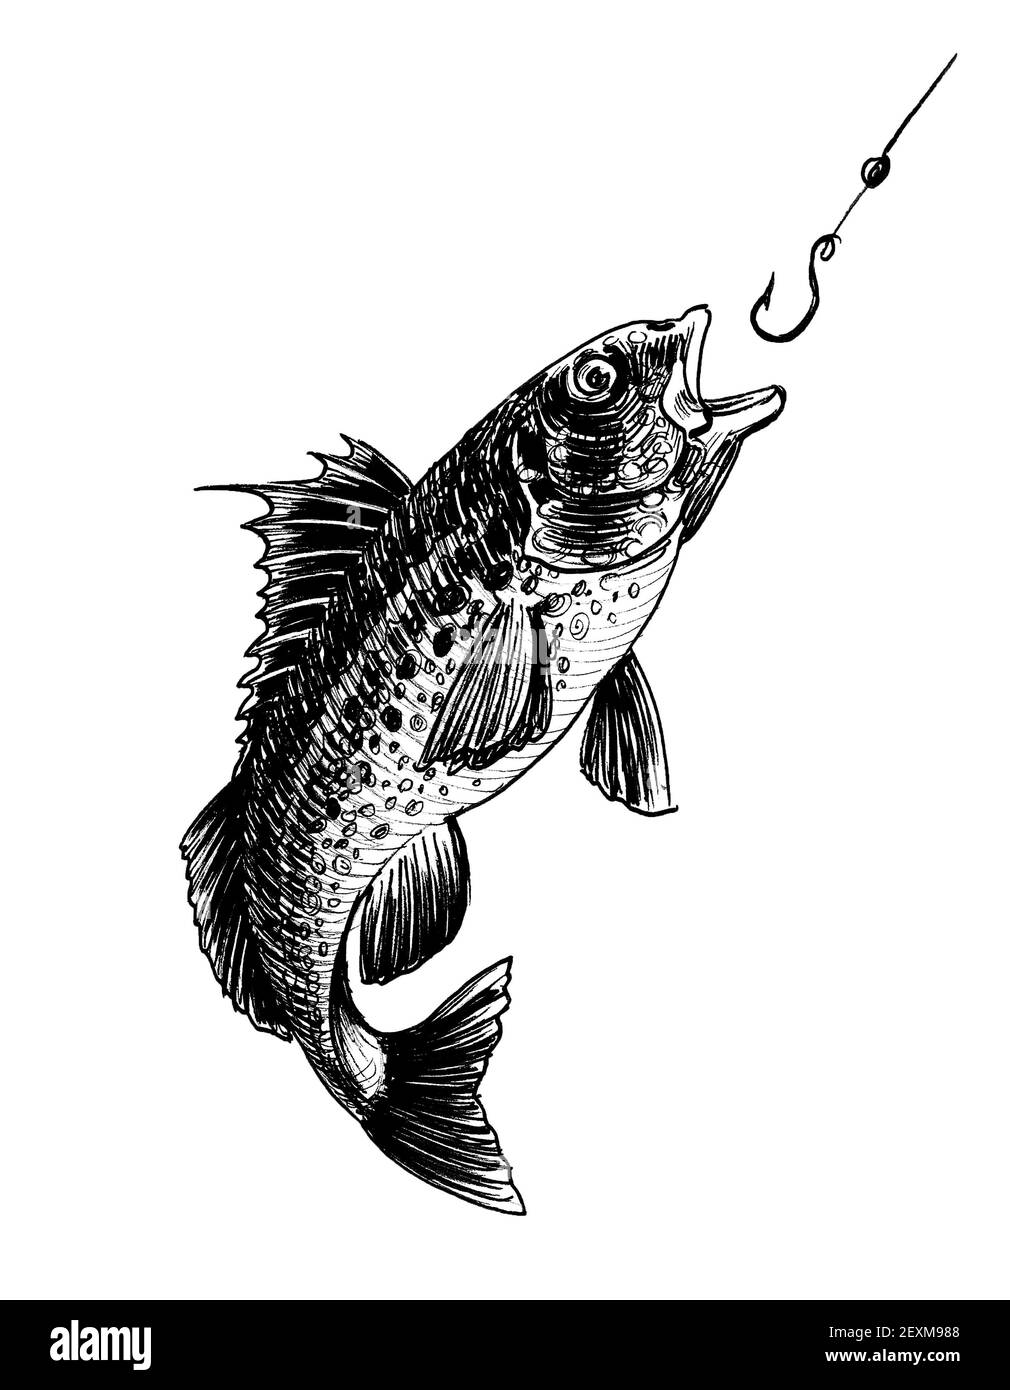 Le poisson et la pêche crochet. Dessin noir et blanc Encre Photo Stock -  Alamy